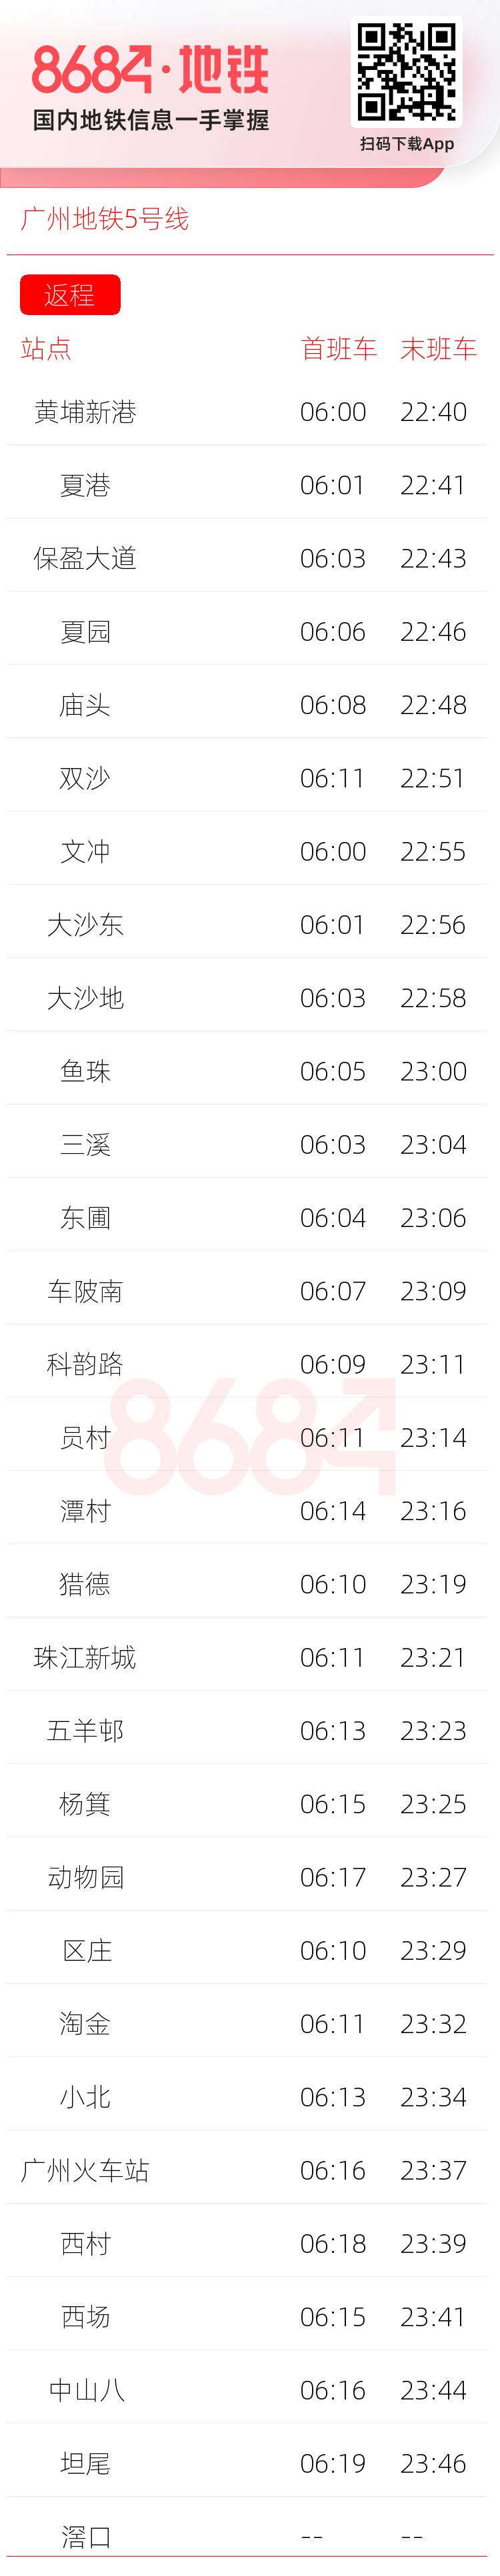 广州地铁5号线运营时间表